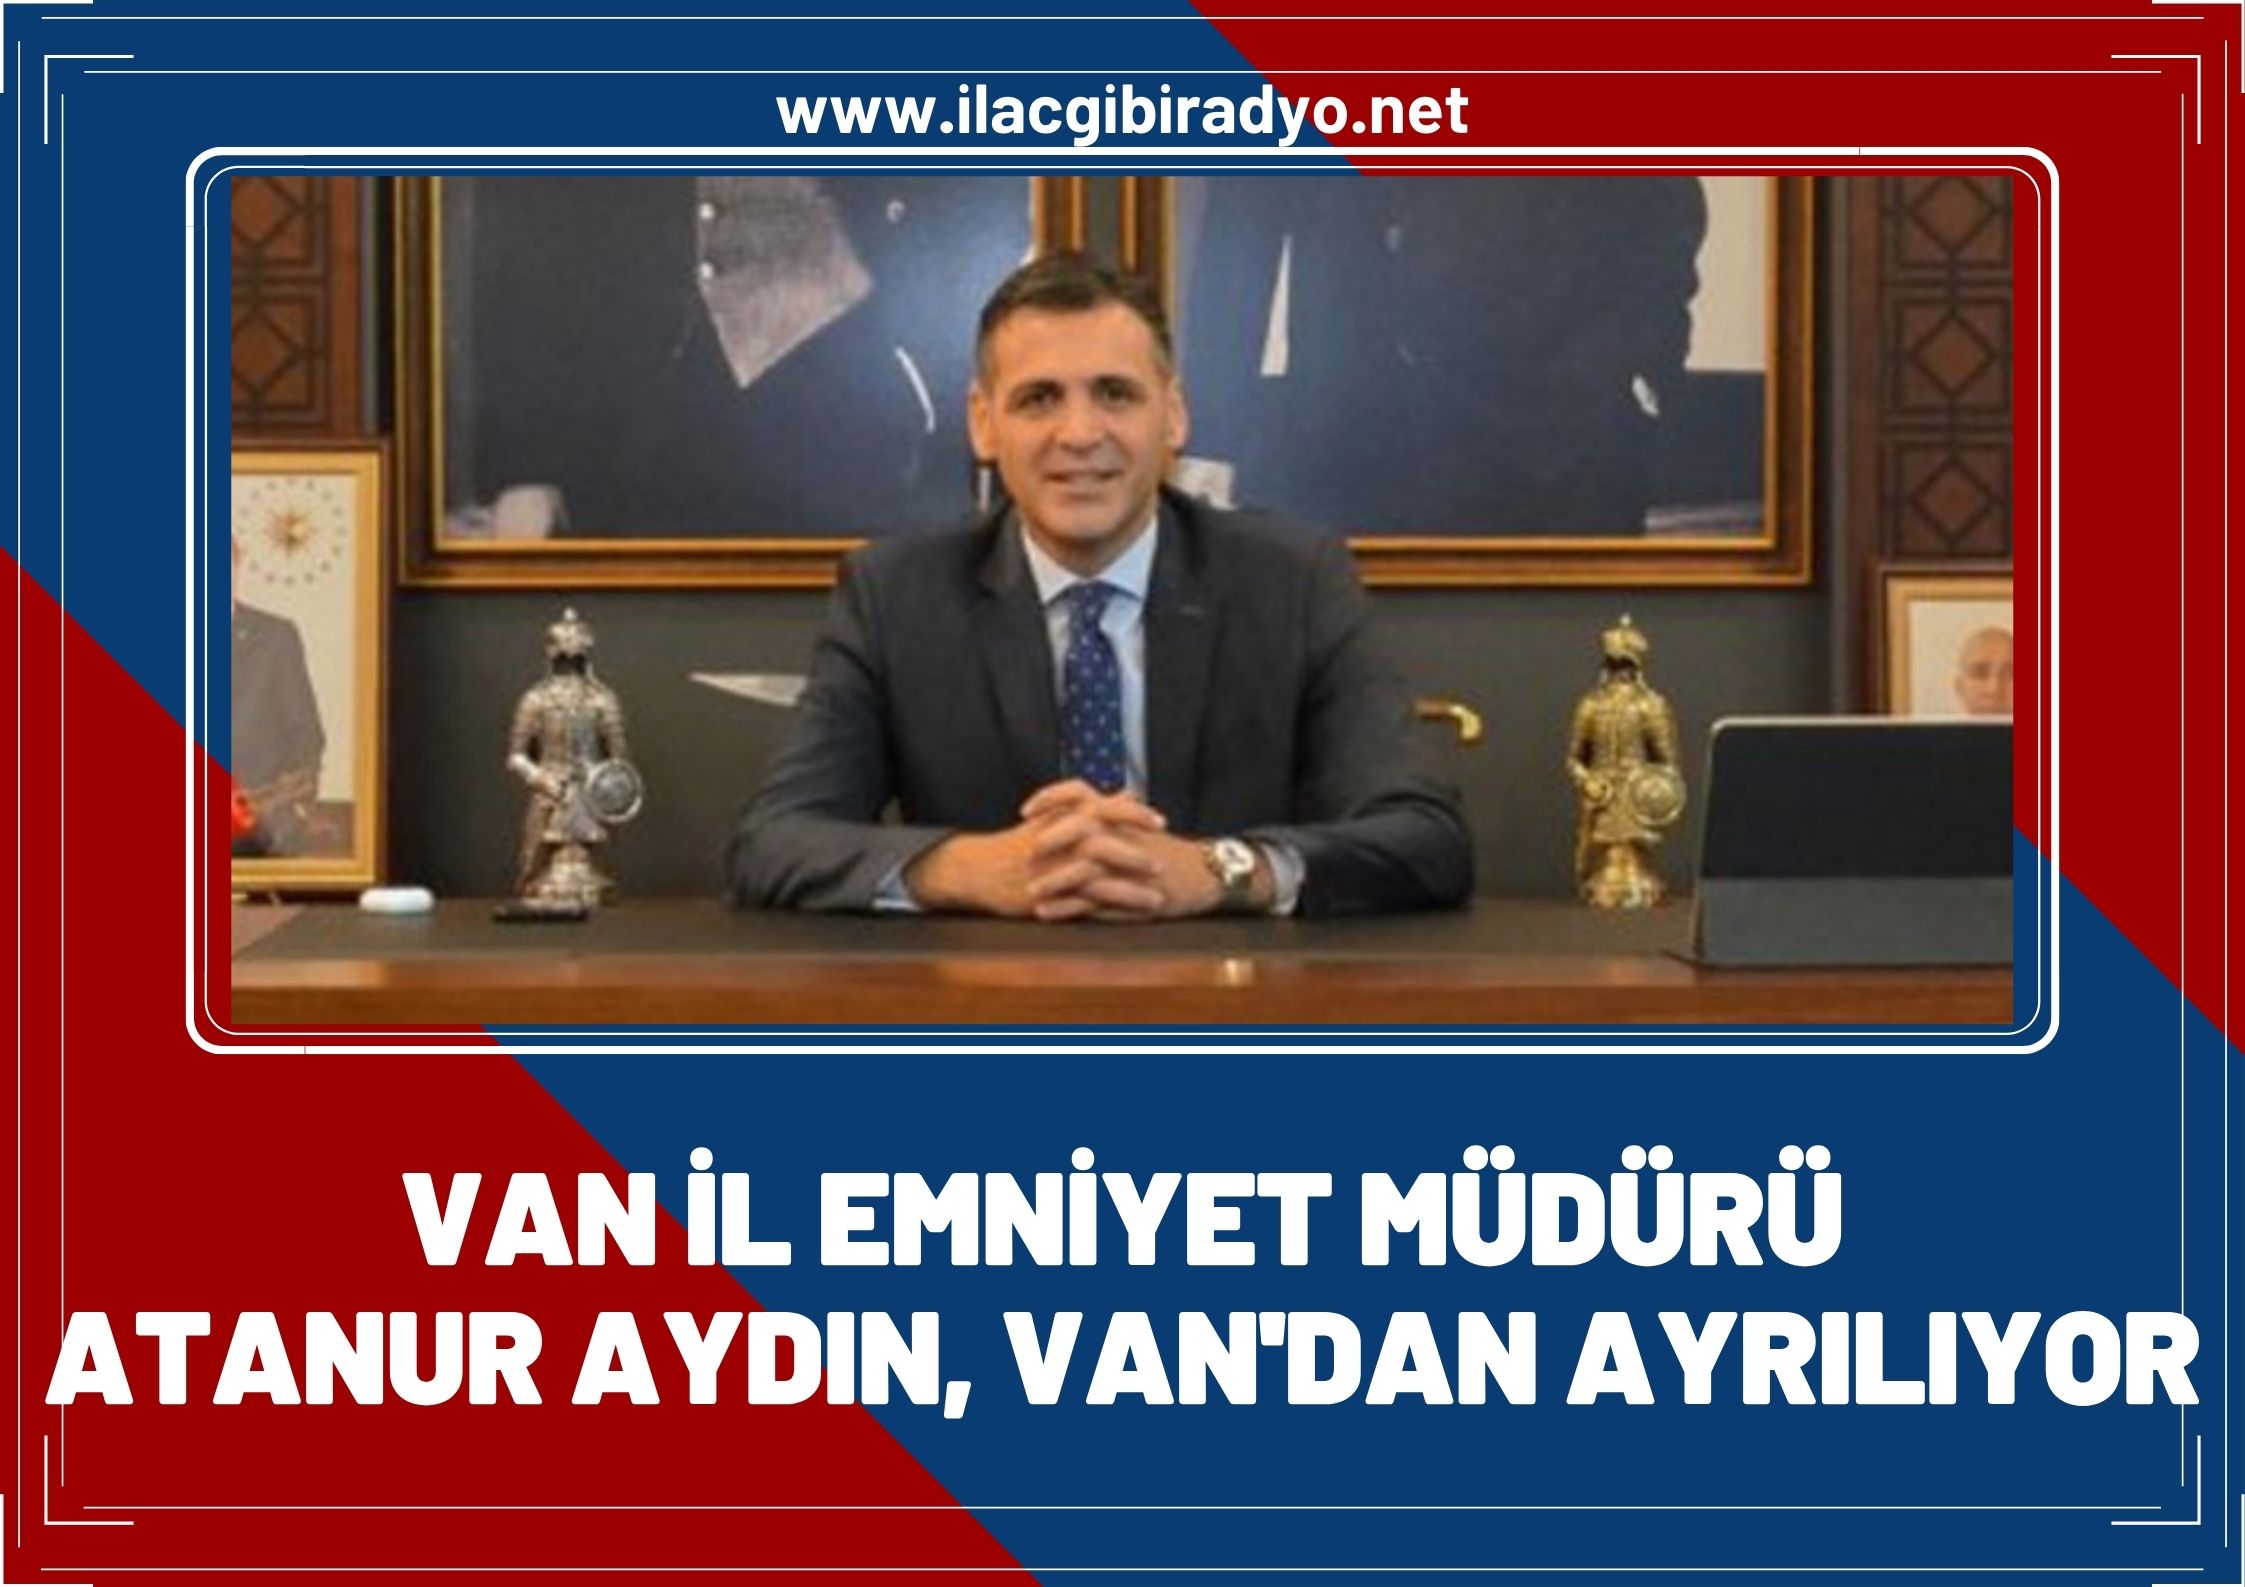 Atanur Aydın Van'dan ayrılıyor!